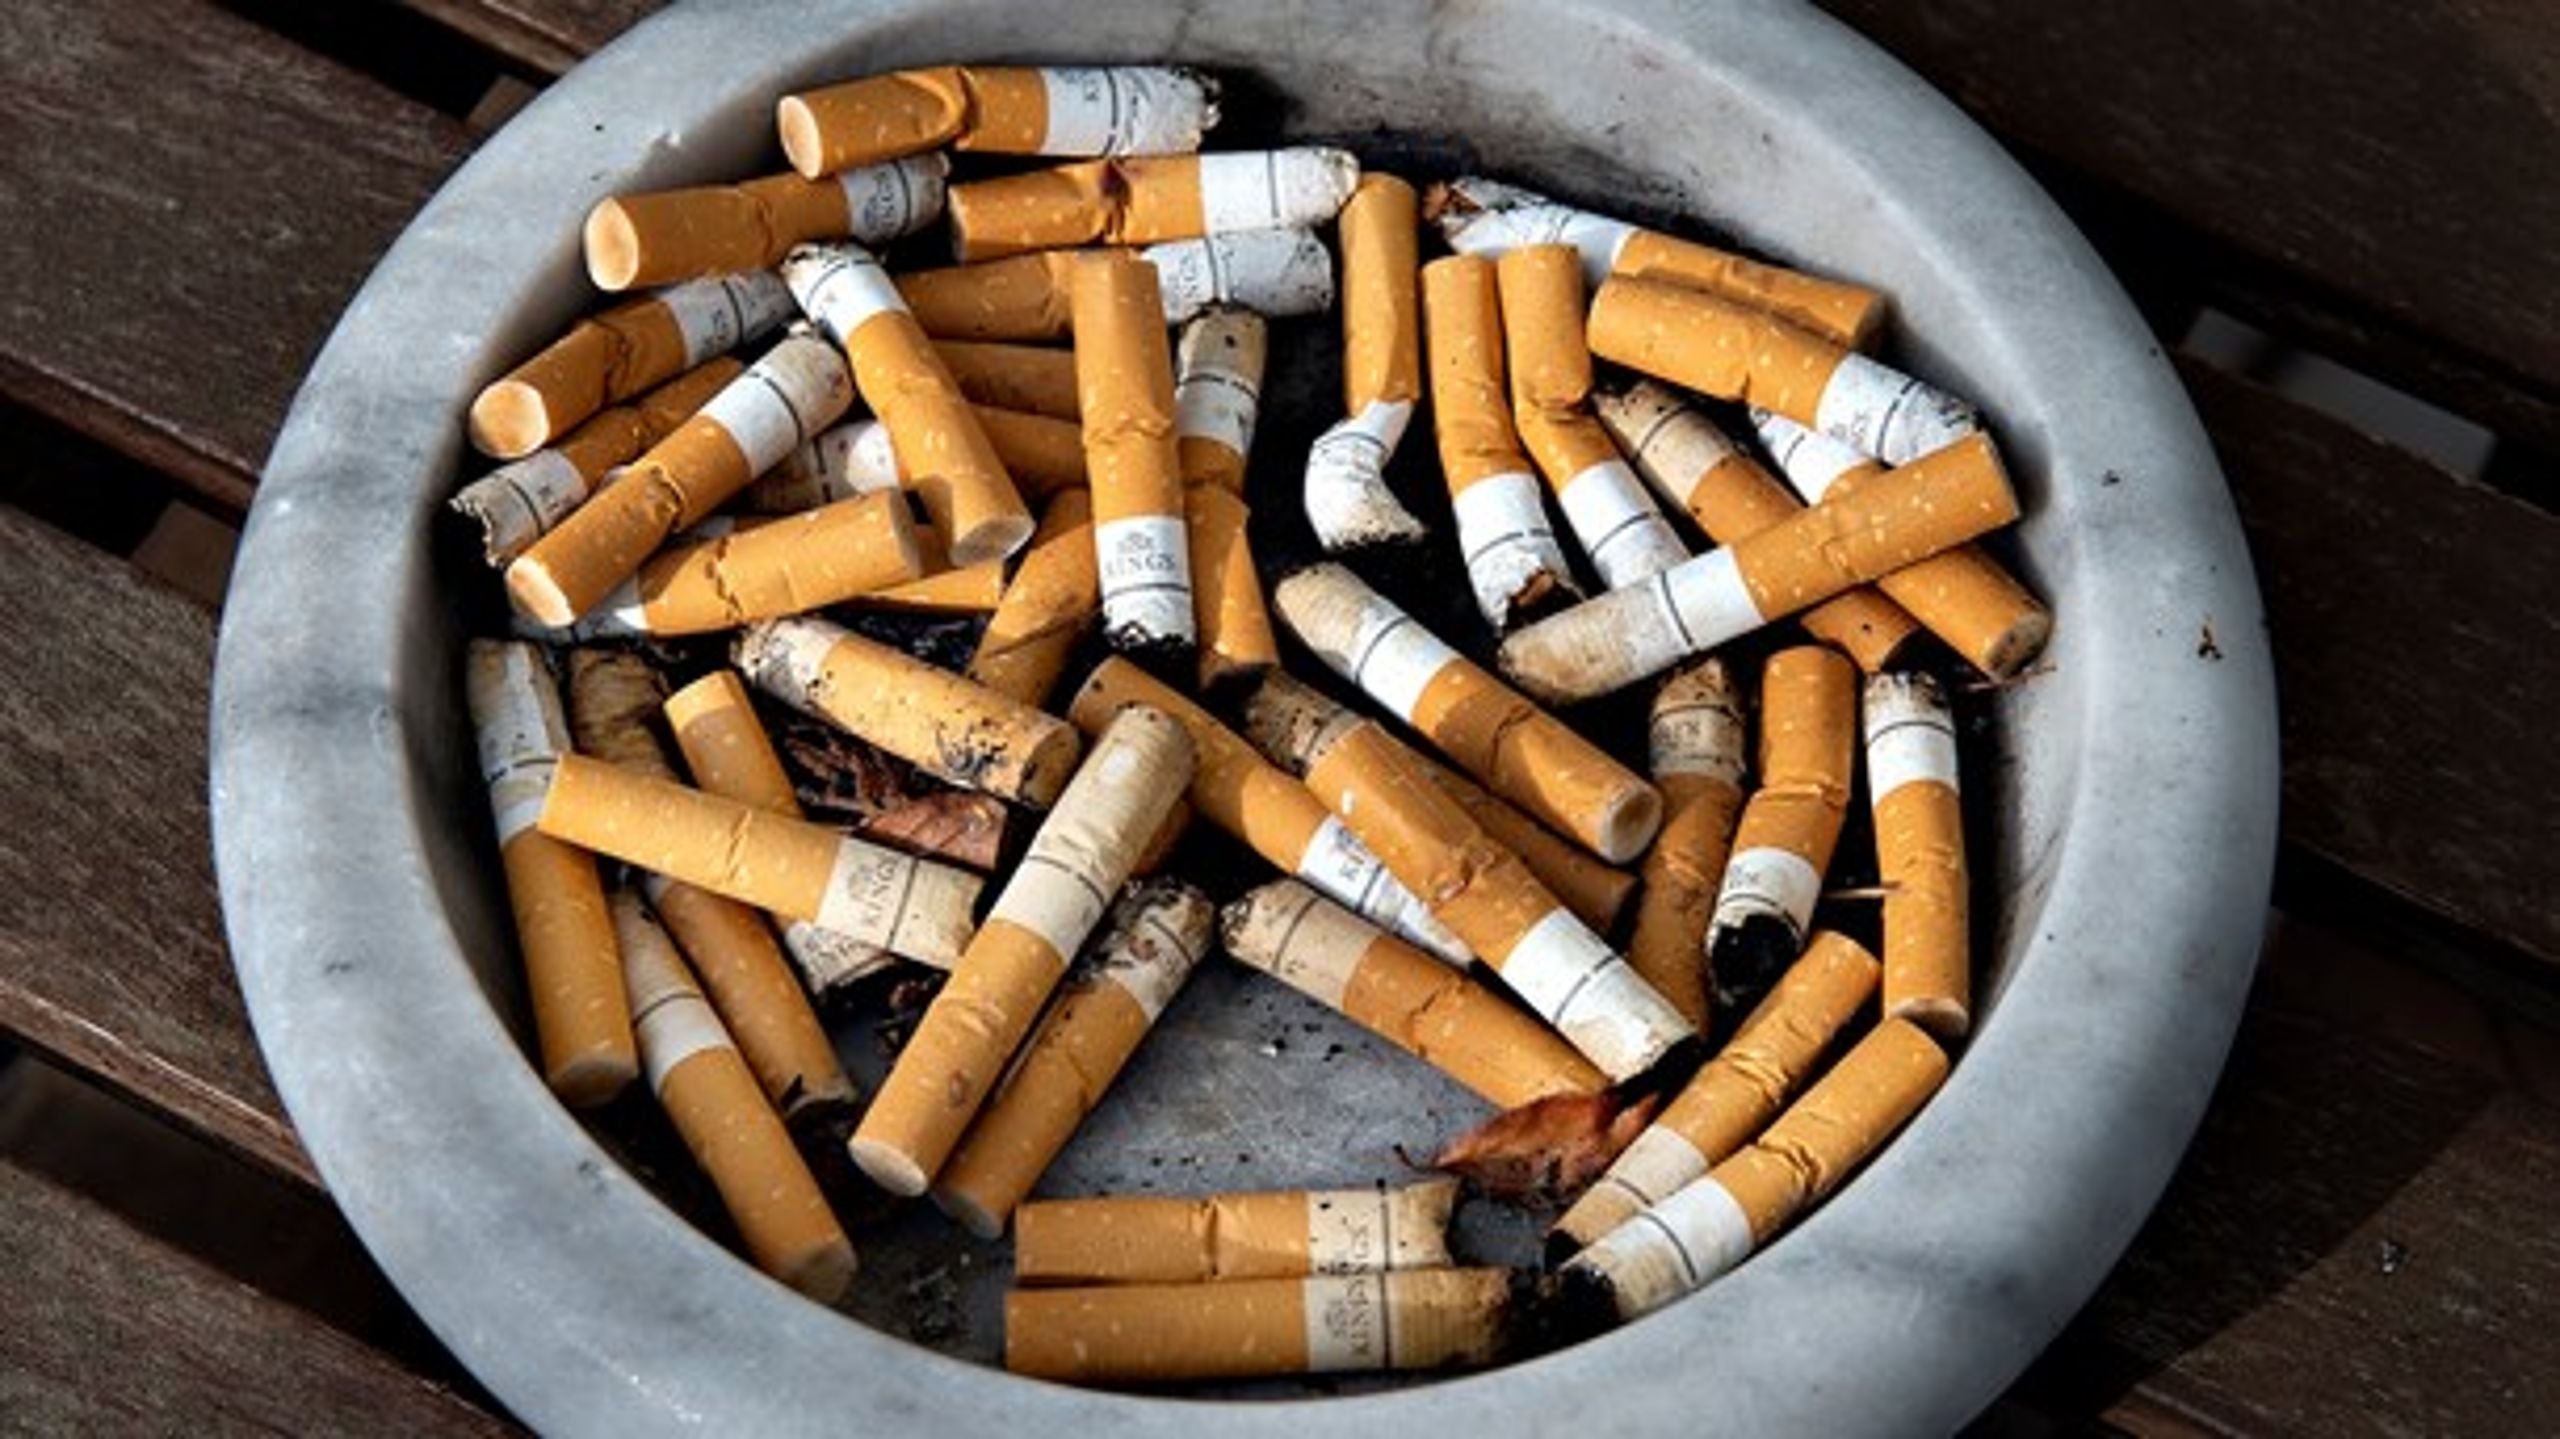 Kan samfundet gøre det dyrere at købe
cigaretter, håndhæve, at der ikke bliver solgt tobak til børn og unge, og
sikre, at eleverne i skolen aldrig bliver udsat for røg, så bliver det nemmere
at vælge tobakken fra, skriver Andreas Rudkjøbing fra Lægeforeningen.